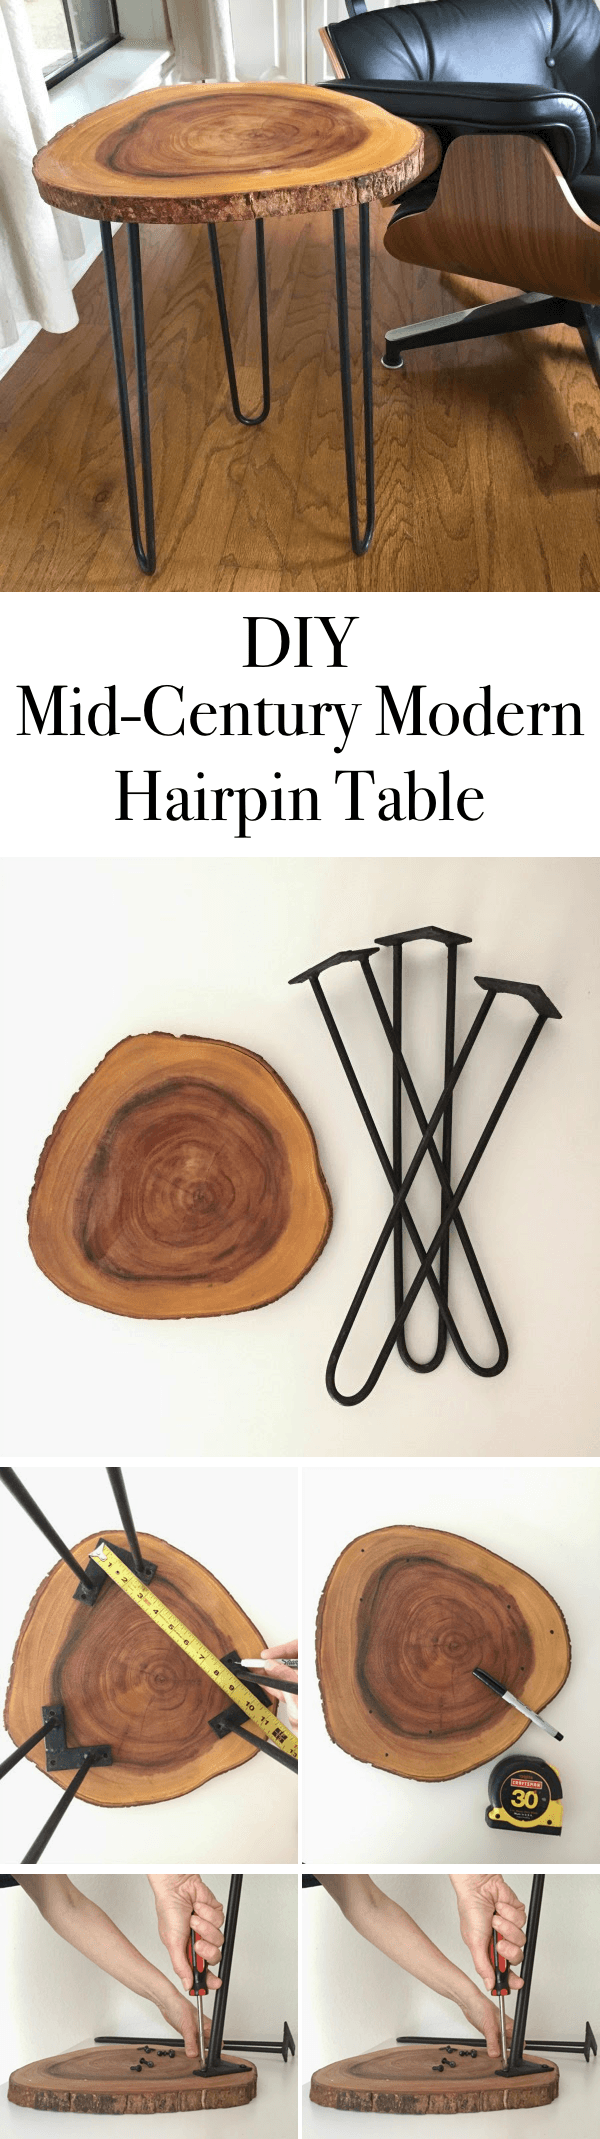 Mid-Century Modern Hairpin Table